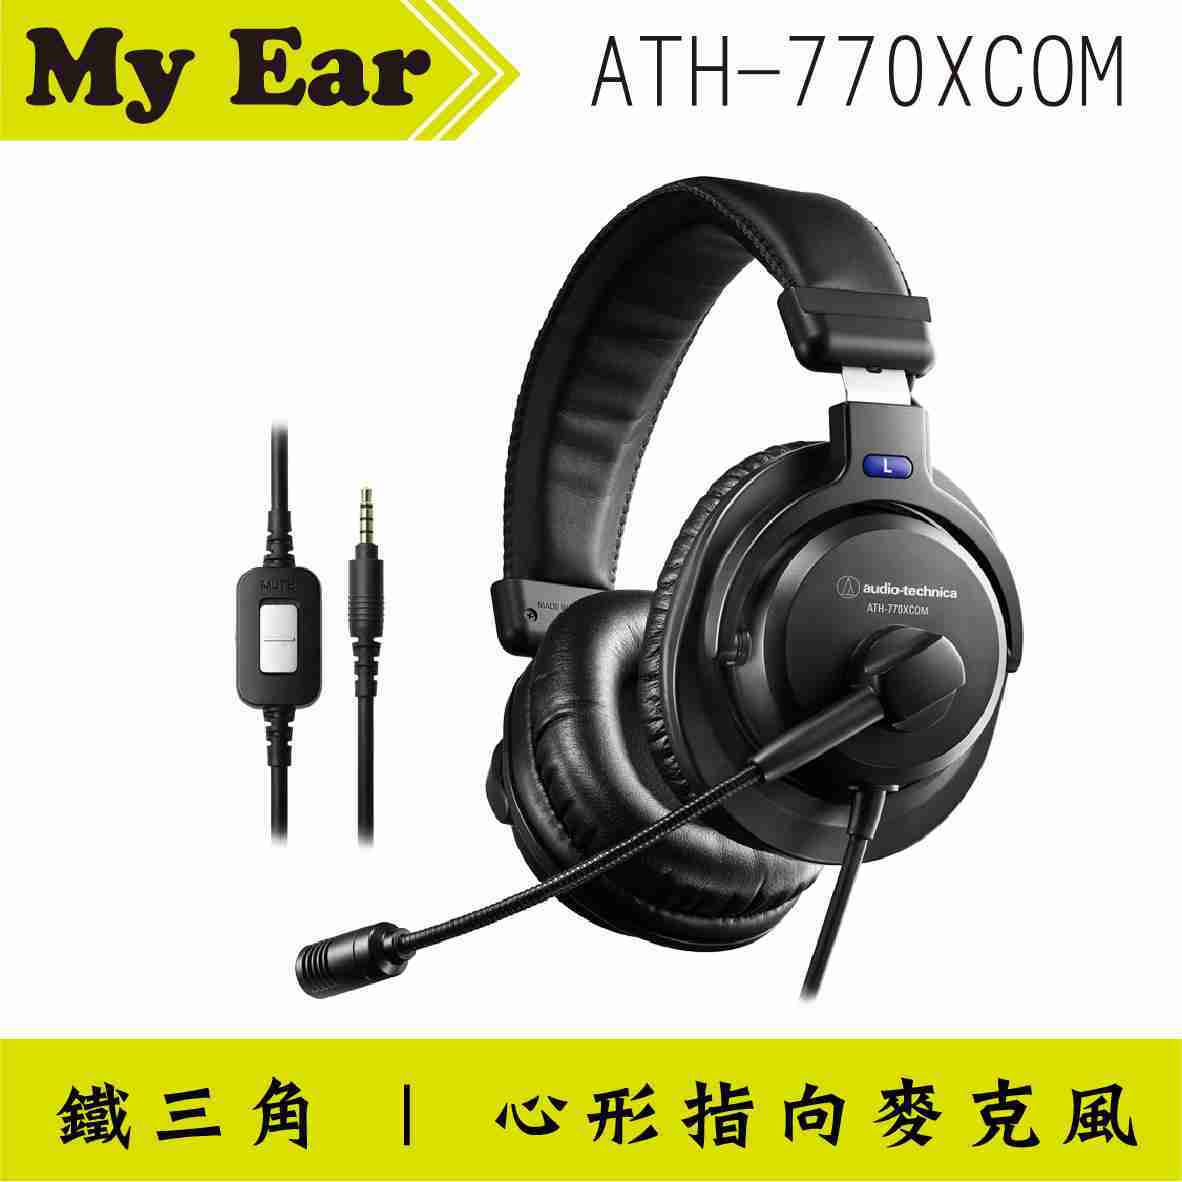 鐵三角 ATH-770XCOM 立體聲 麥克風 耳罩式 有線 耳機 | My Ear 耳機專門店